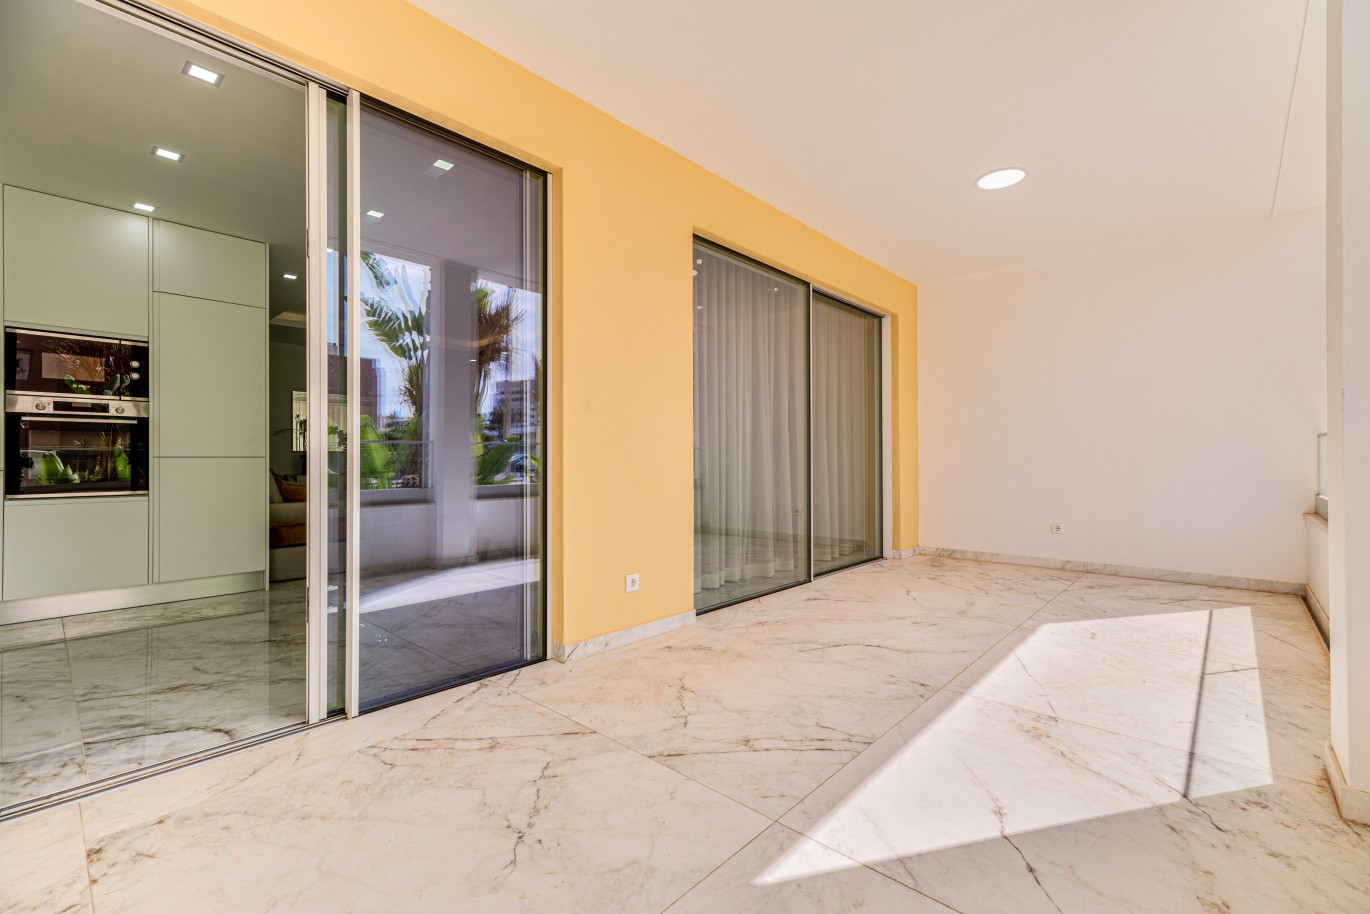 Verkauf einer Wohnung im Bau, mit Terrasse, Lagos, Algarve, Portugal_238232